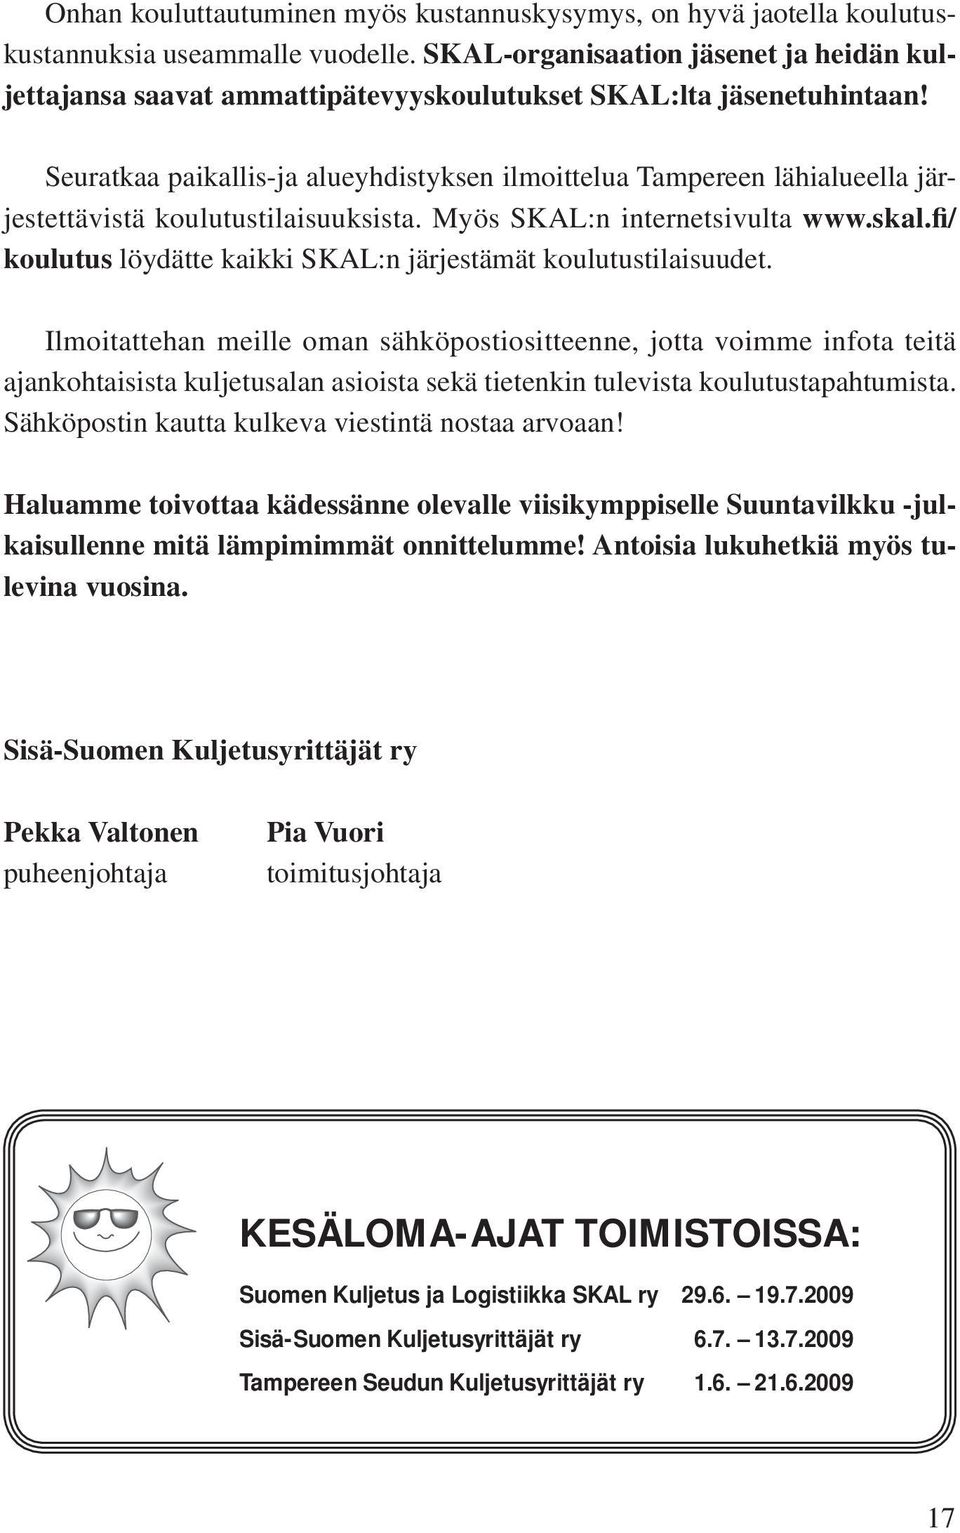 Seuratkaa paikallis-ja alueyhdistyksen ilmoittelua Tampereen lähialueella järjestettävistä koulutustilaisuuksista. Myös SKAL:n internetsivulta www.skal.